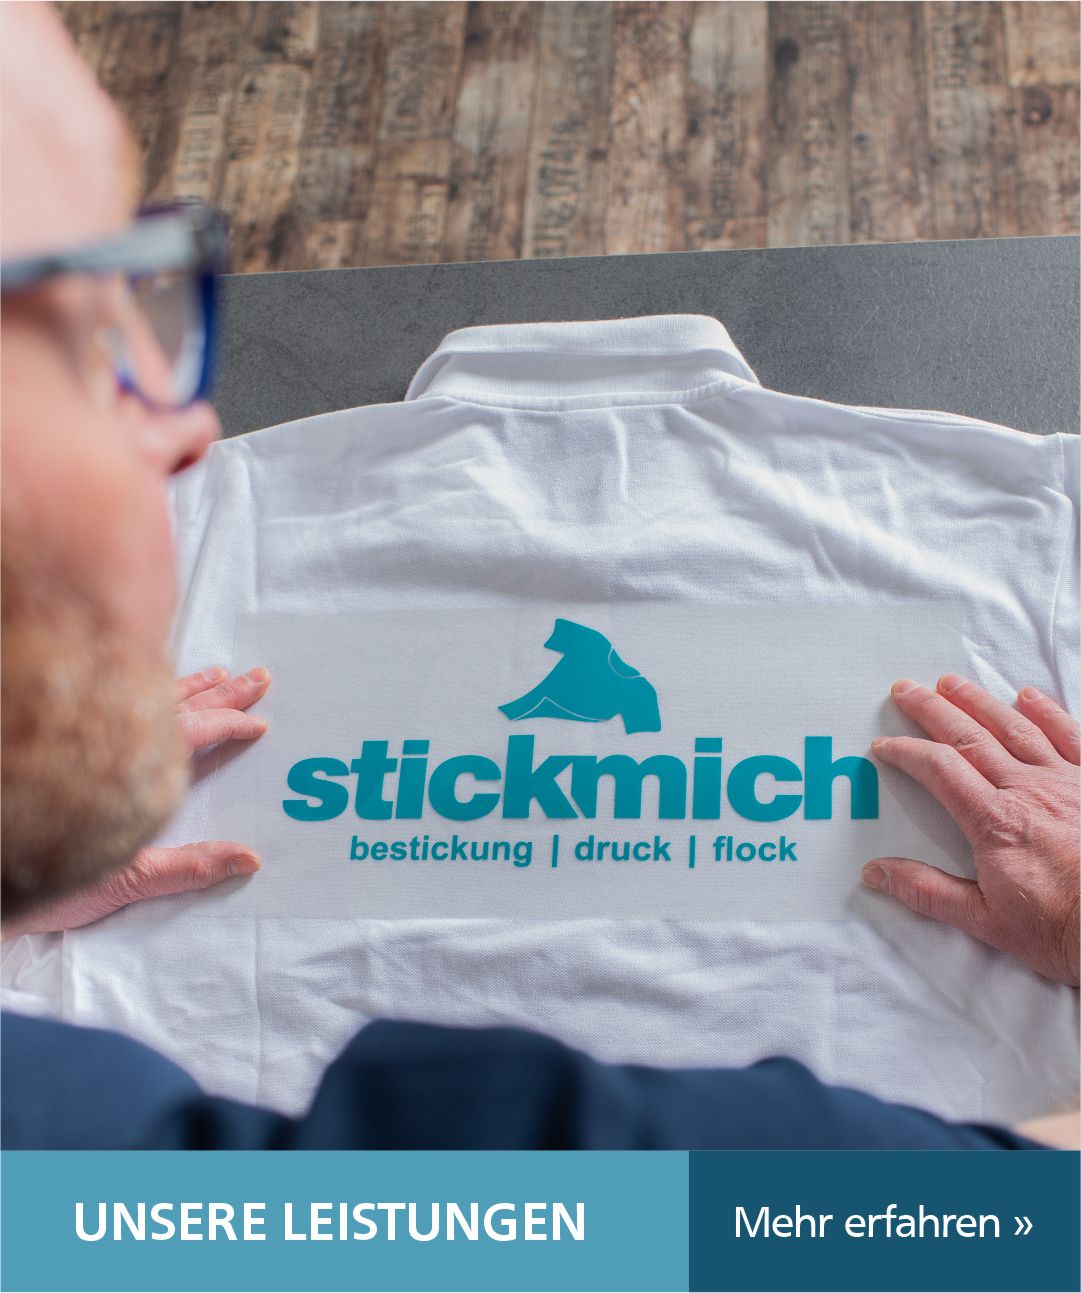 stickmich_slider_home_002